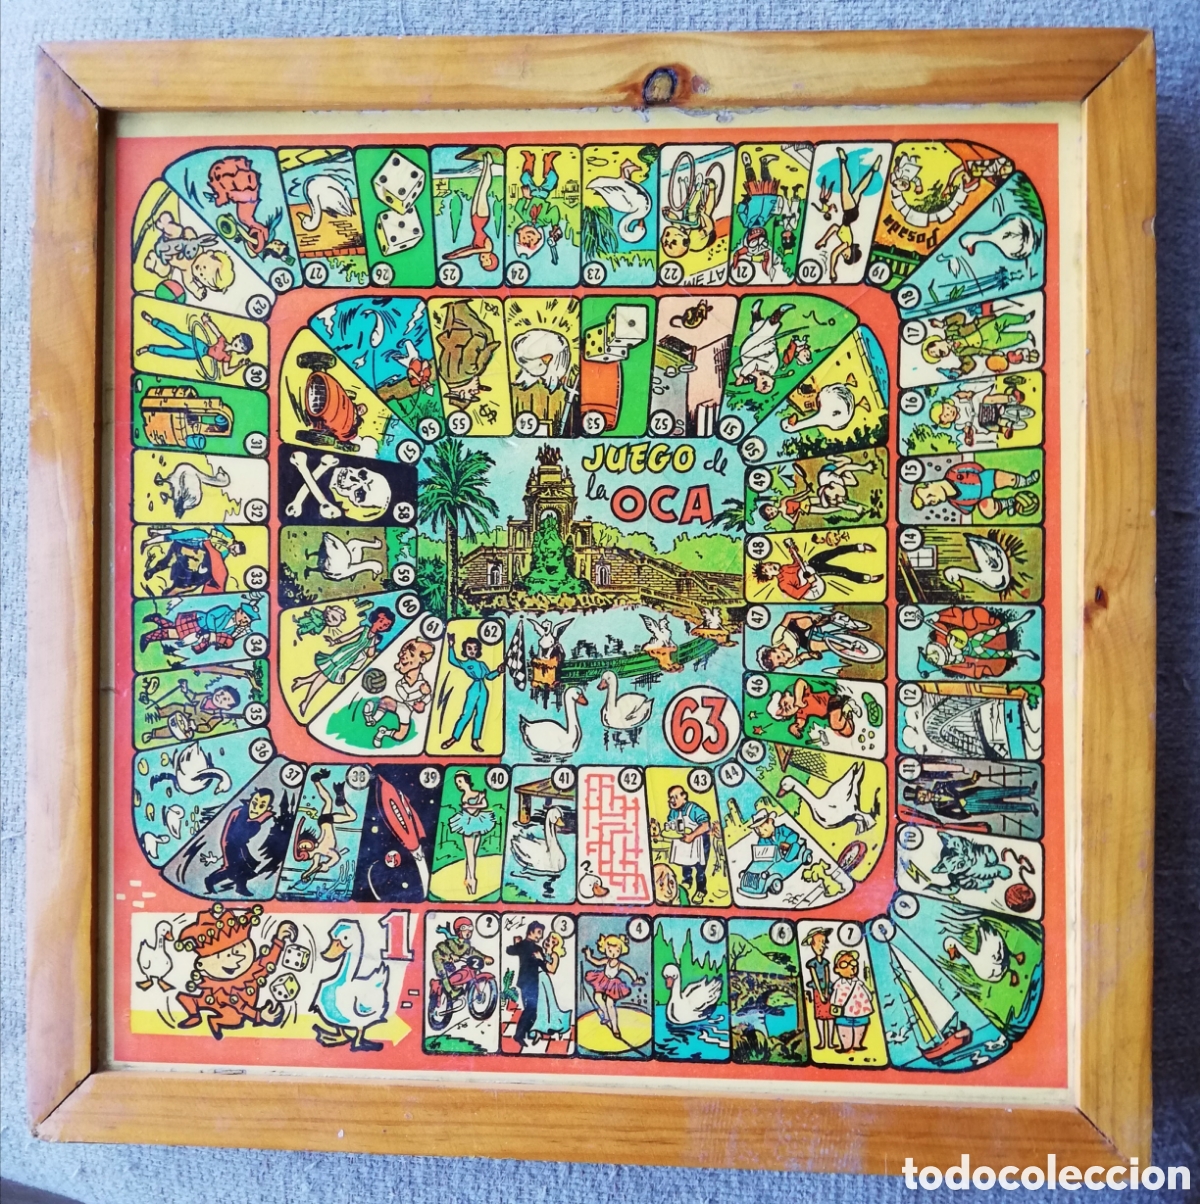 tablero del juego la quiniela de los juegos reu - Buy Antique board games  on todocoleccion